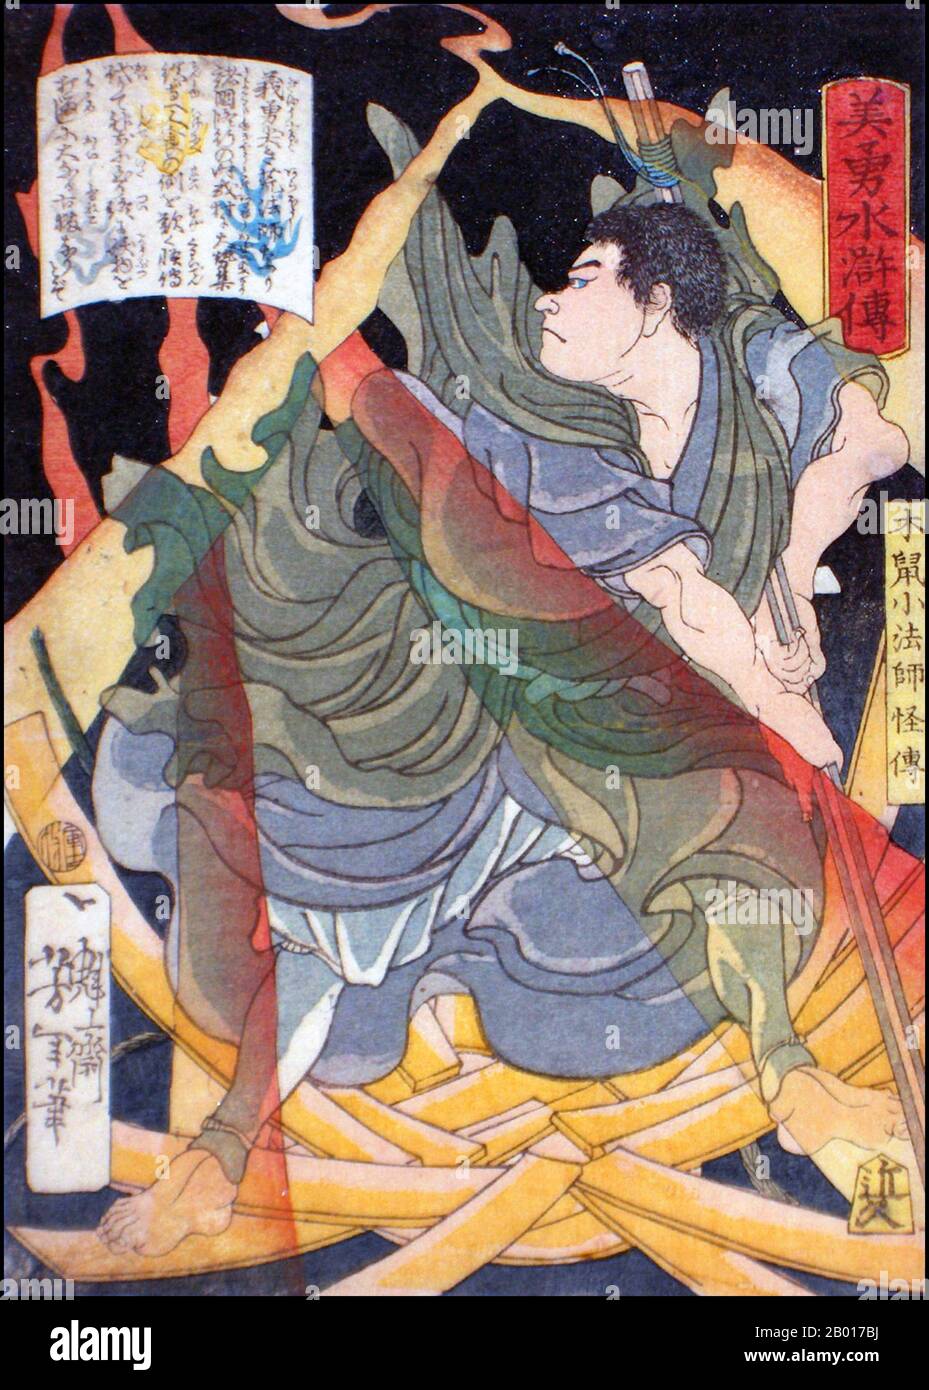 Giappone: 'Il Kaiden Monk uccidendo un gatto selvaggio'. Ukiyo-e stampa di blocco di legno dalla serie 'Eroi del margine d'acqua' di Tsukioka Yoshitoshi (1839 - 9 giugno 1892), 1866. Tsukioka Yoshitoshi, anche chiamato Taiso Yoshitoshi, era un artista giapponese. È ampiamente riconosciuto come l'ultimo grande maestro di Ukiyo-e, un tipo di stampa giapponese a blocchi di legno. È inoltre considerato uno dei più grandi innovatori della forma. La sua carriera ha abbracciato due epoche – gli ultimi anni del Giappone feudale, e i primi anni del Giappone moderno dopo la Restaurazione Meiji. Foto Stock